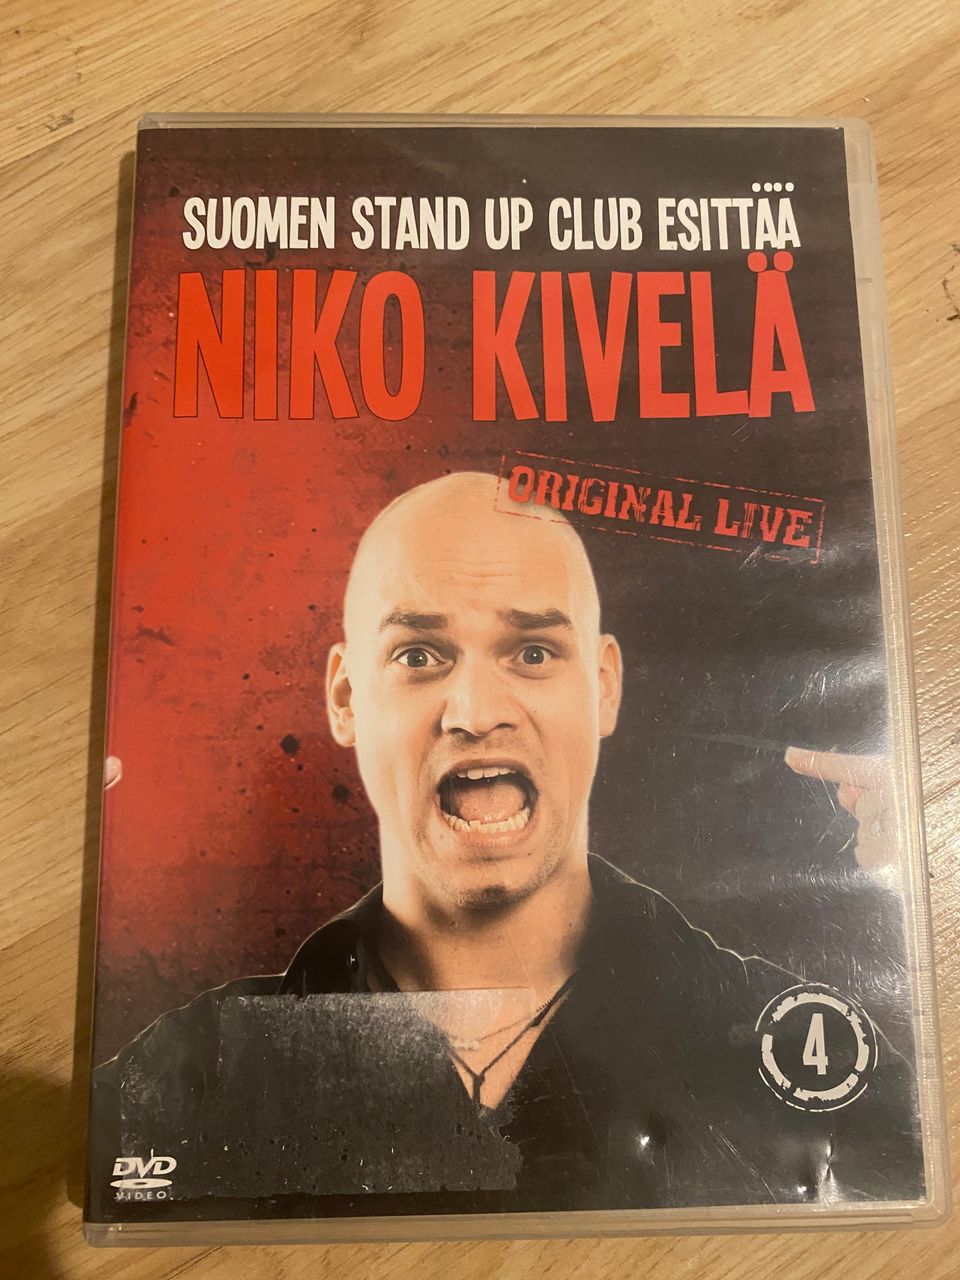 Niko kivelä suomen stand up club esittää